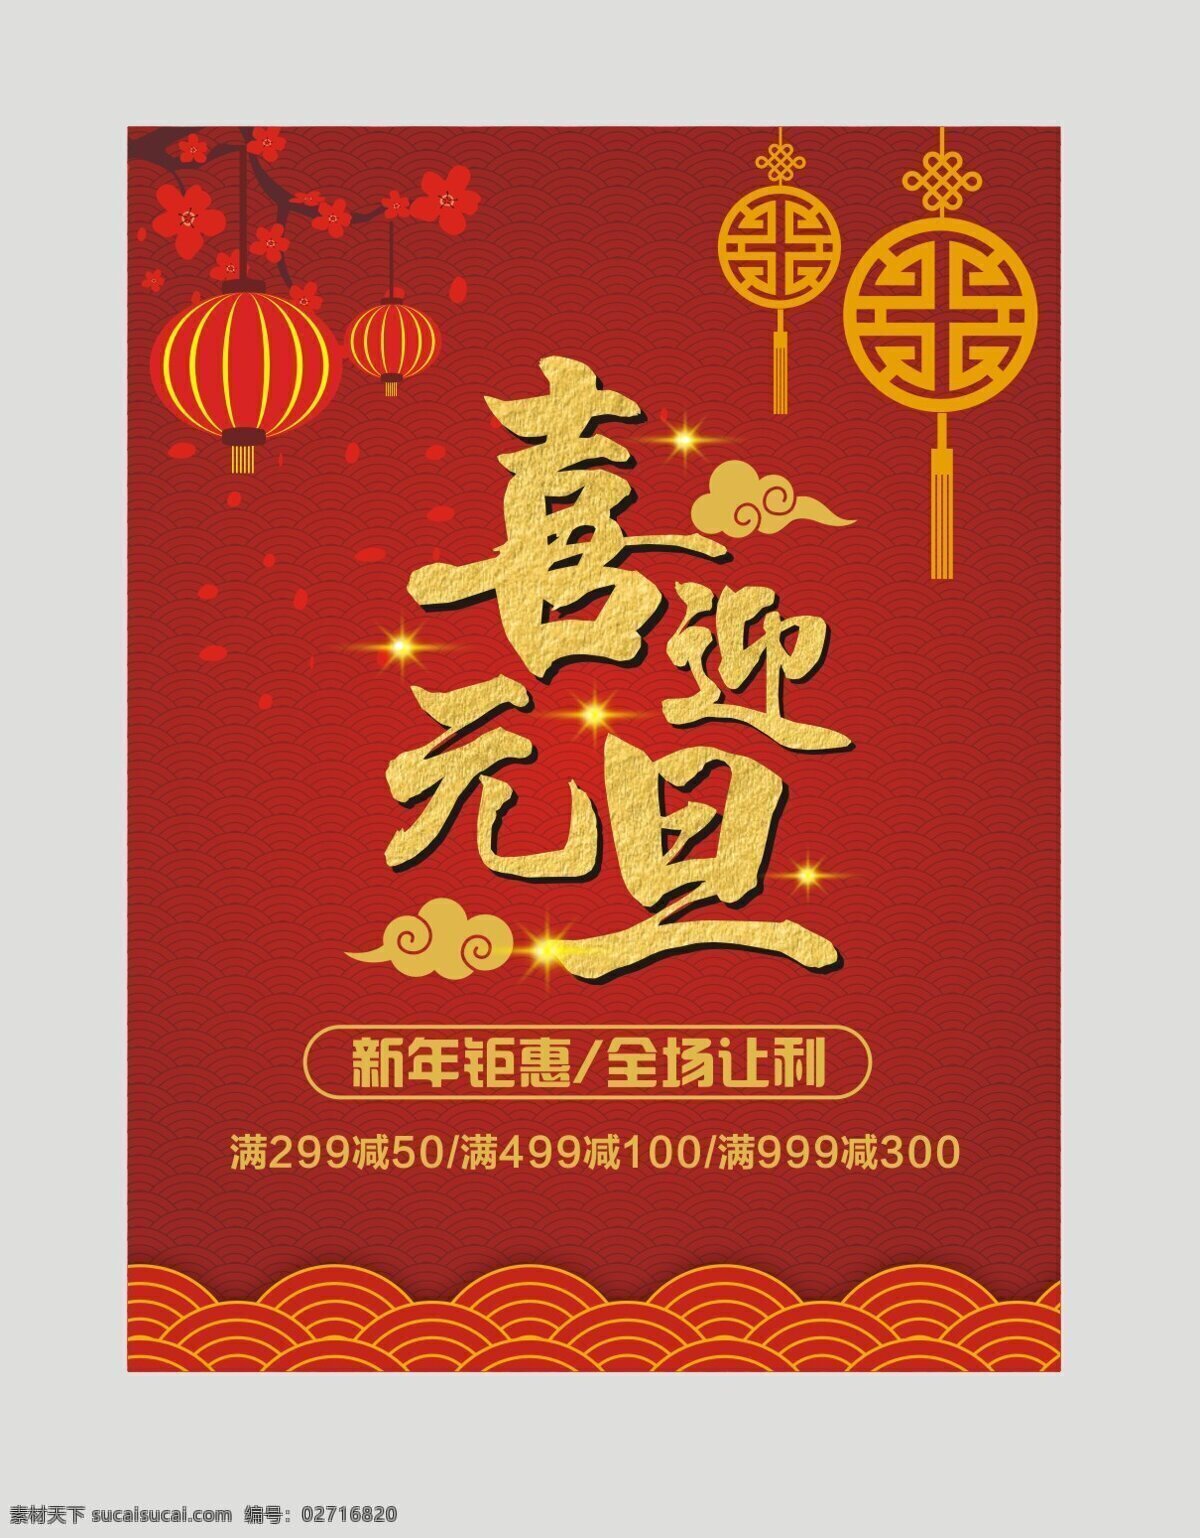 喜迎 元旦 新年 促销 全场 让利 黄色 金色 节日 灯笼 红 中国红 中国结 新年钜惠